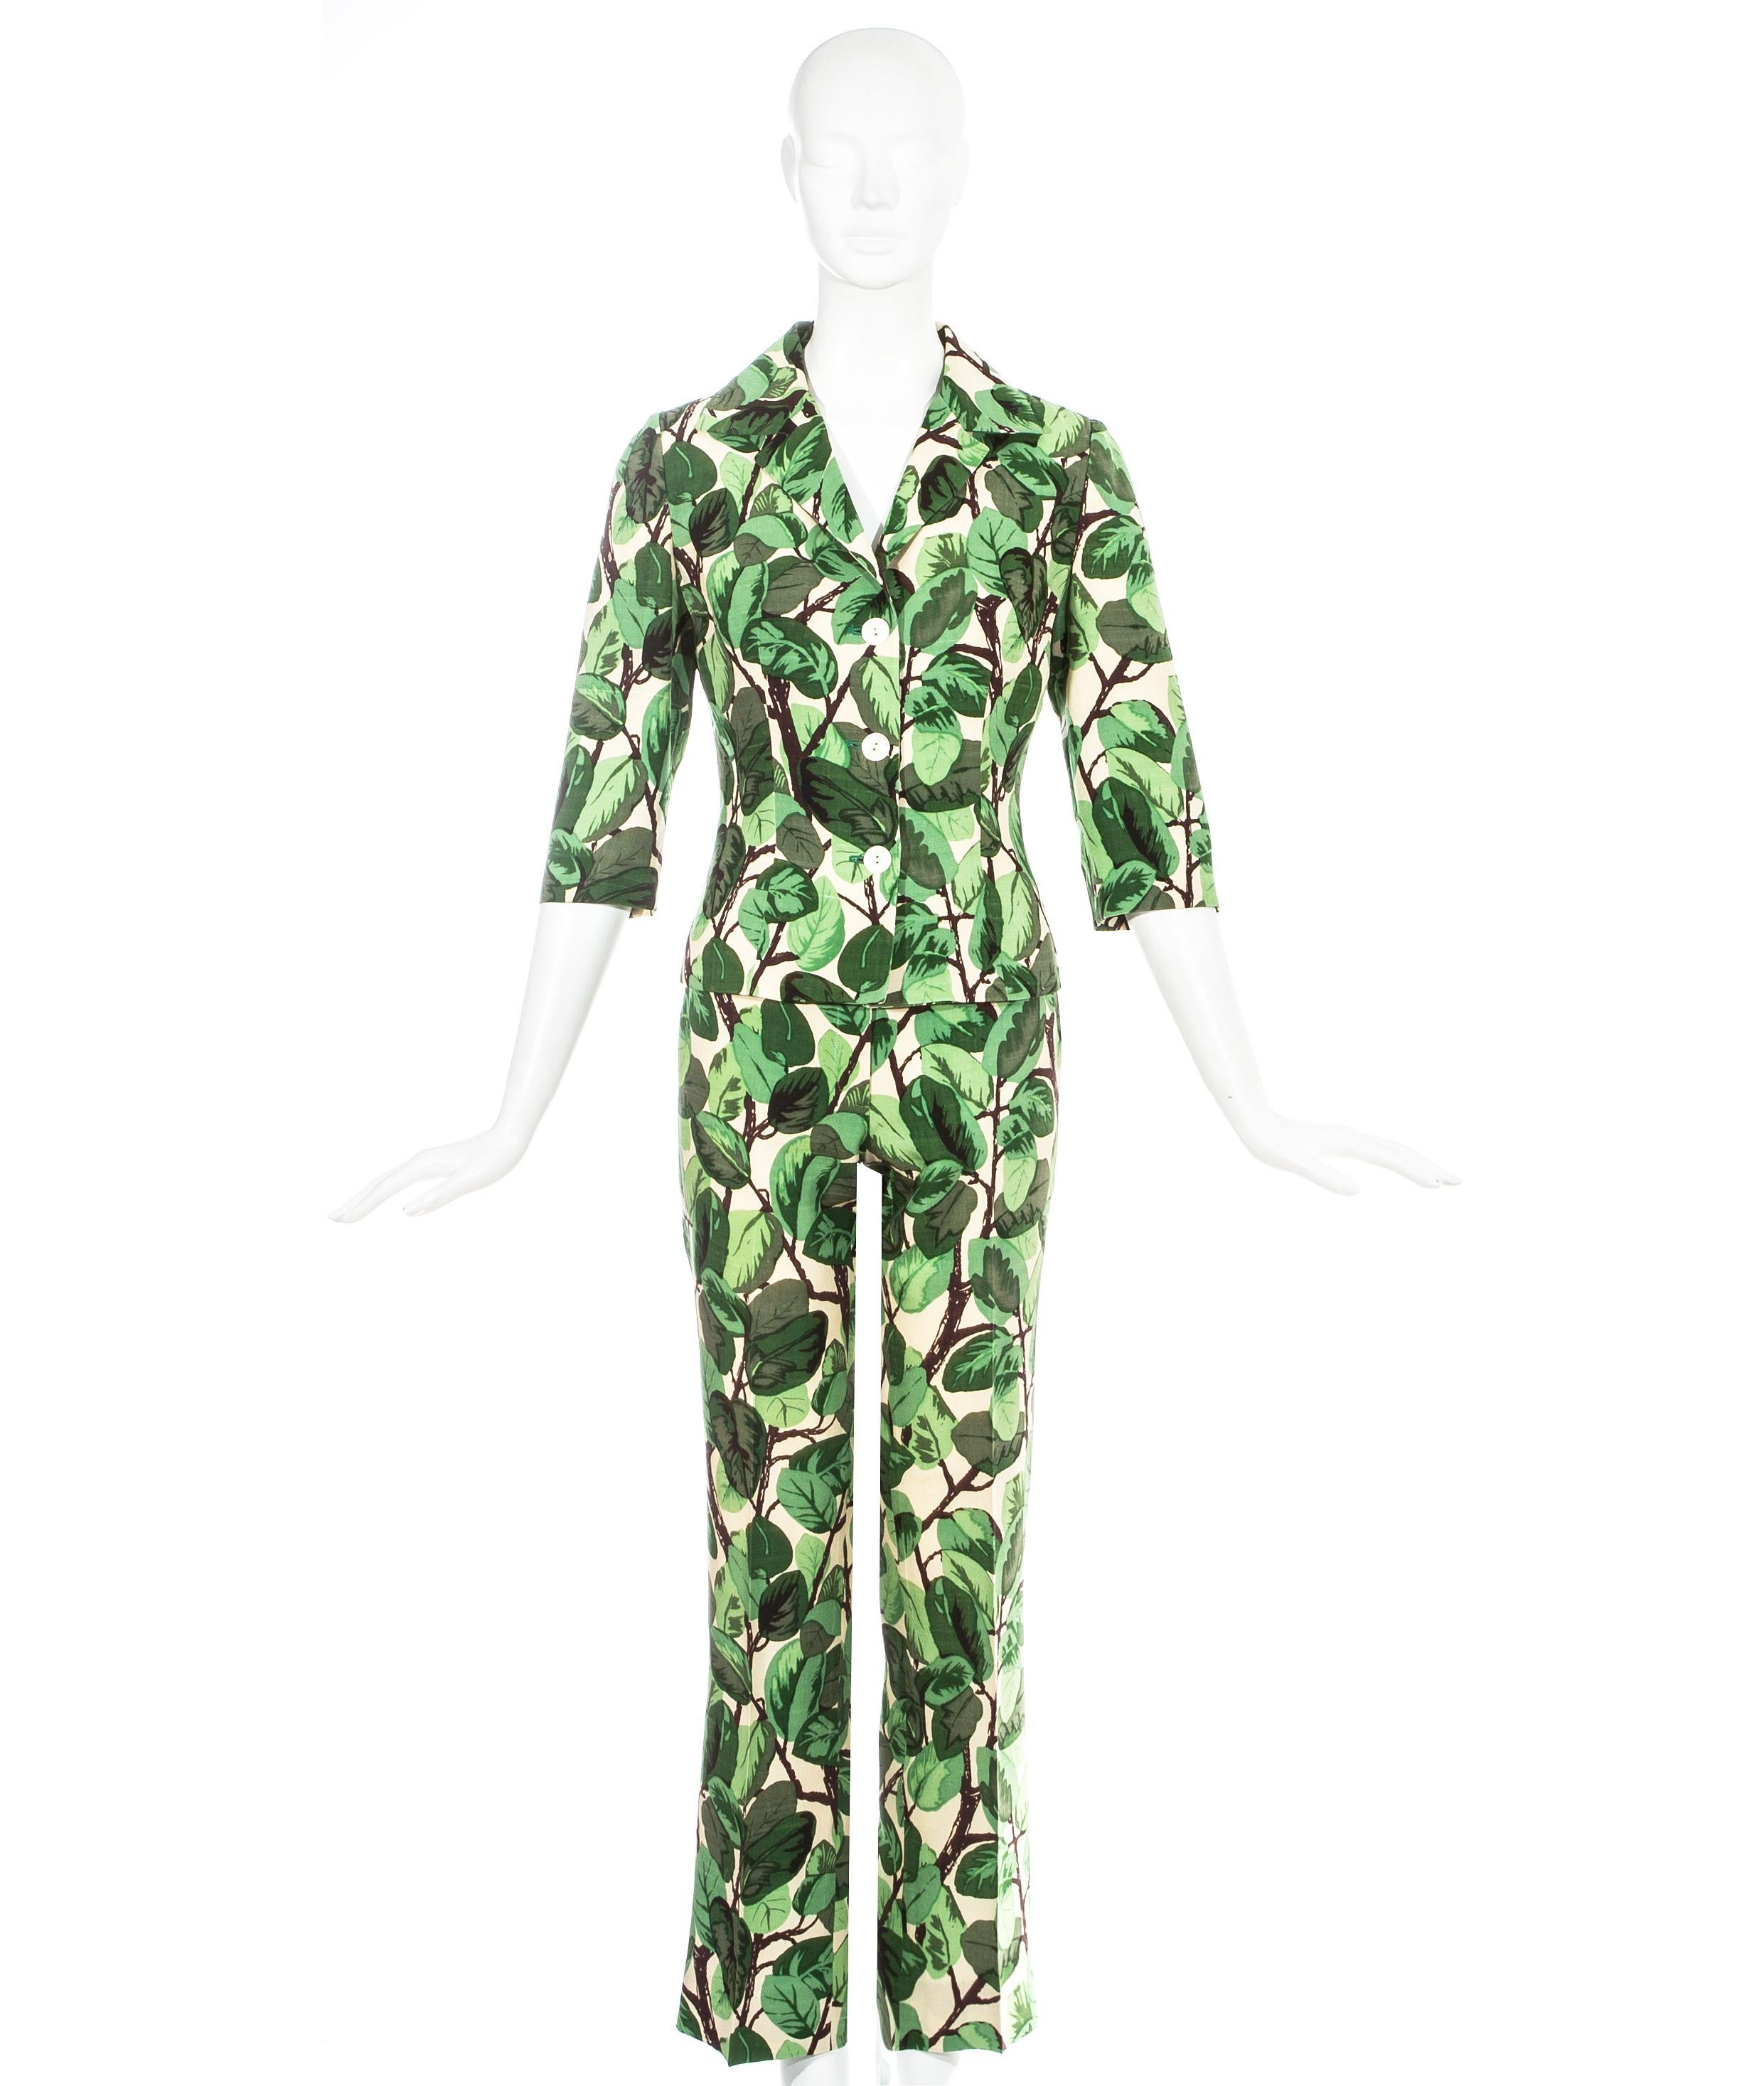 Dolce & Gabbana Hosenanzug aus Seidenleinen mit weißem und grünem Blattwerk. Taillierte Jacke mit angeschnittenen Ärmeln und schmal geschnittene Hose.

Frühjahr-Sommer 1997